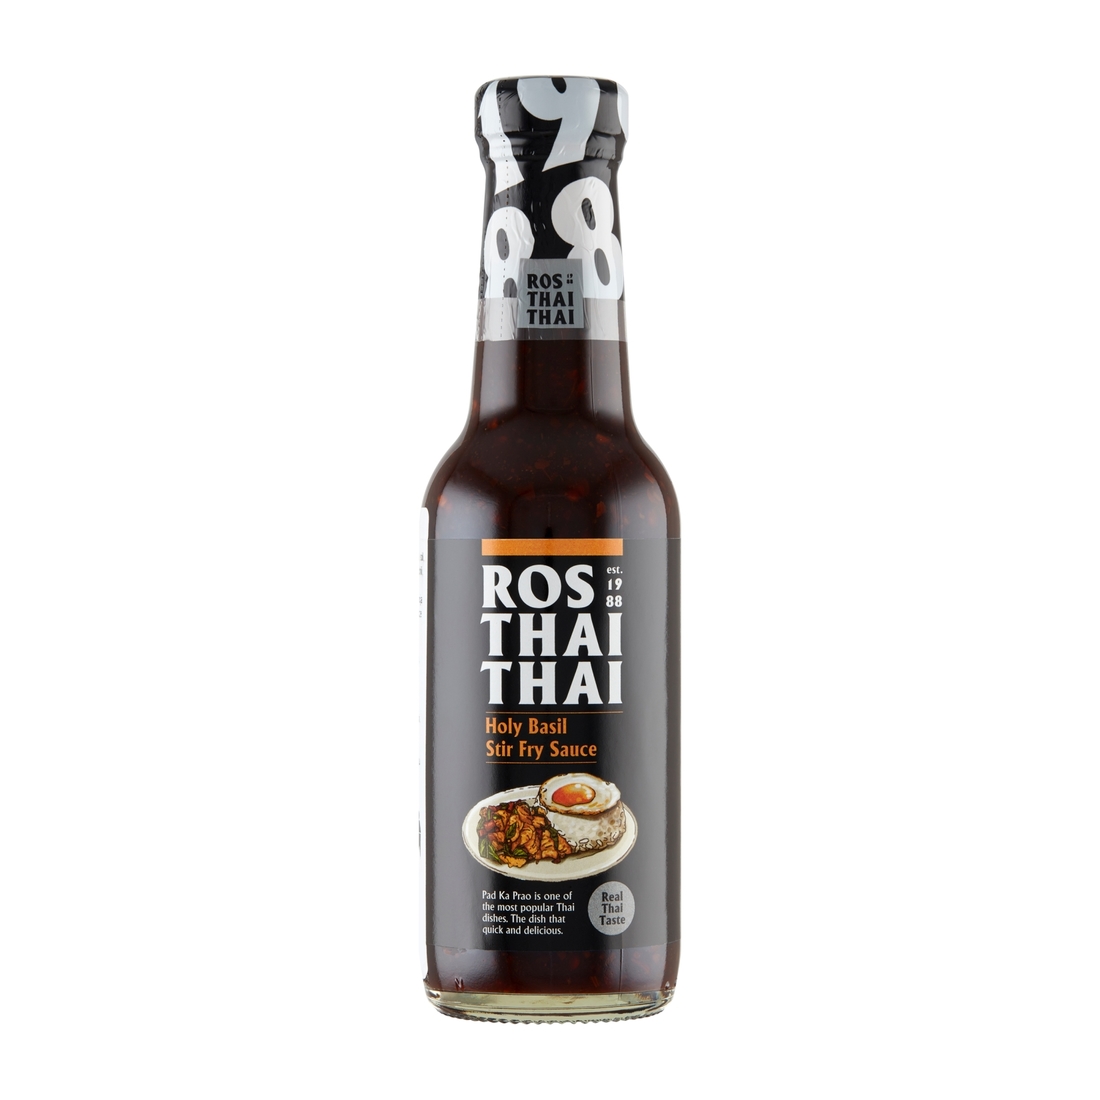 Sos holly basil stir fry 280g Ros Thai Thai Ros Thai Thai